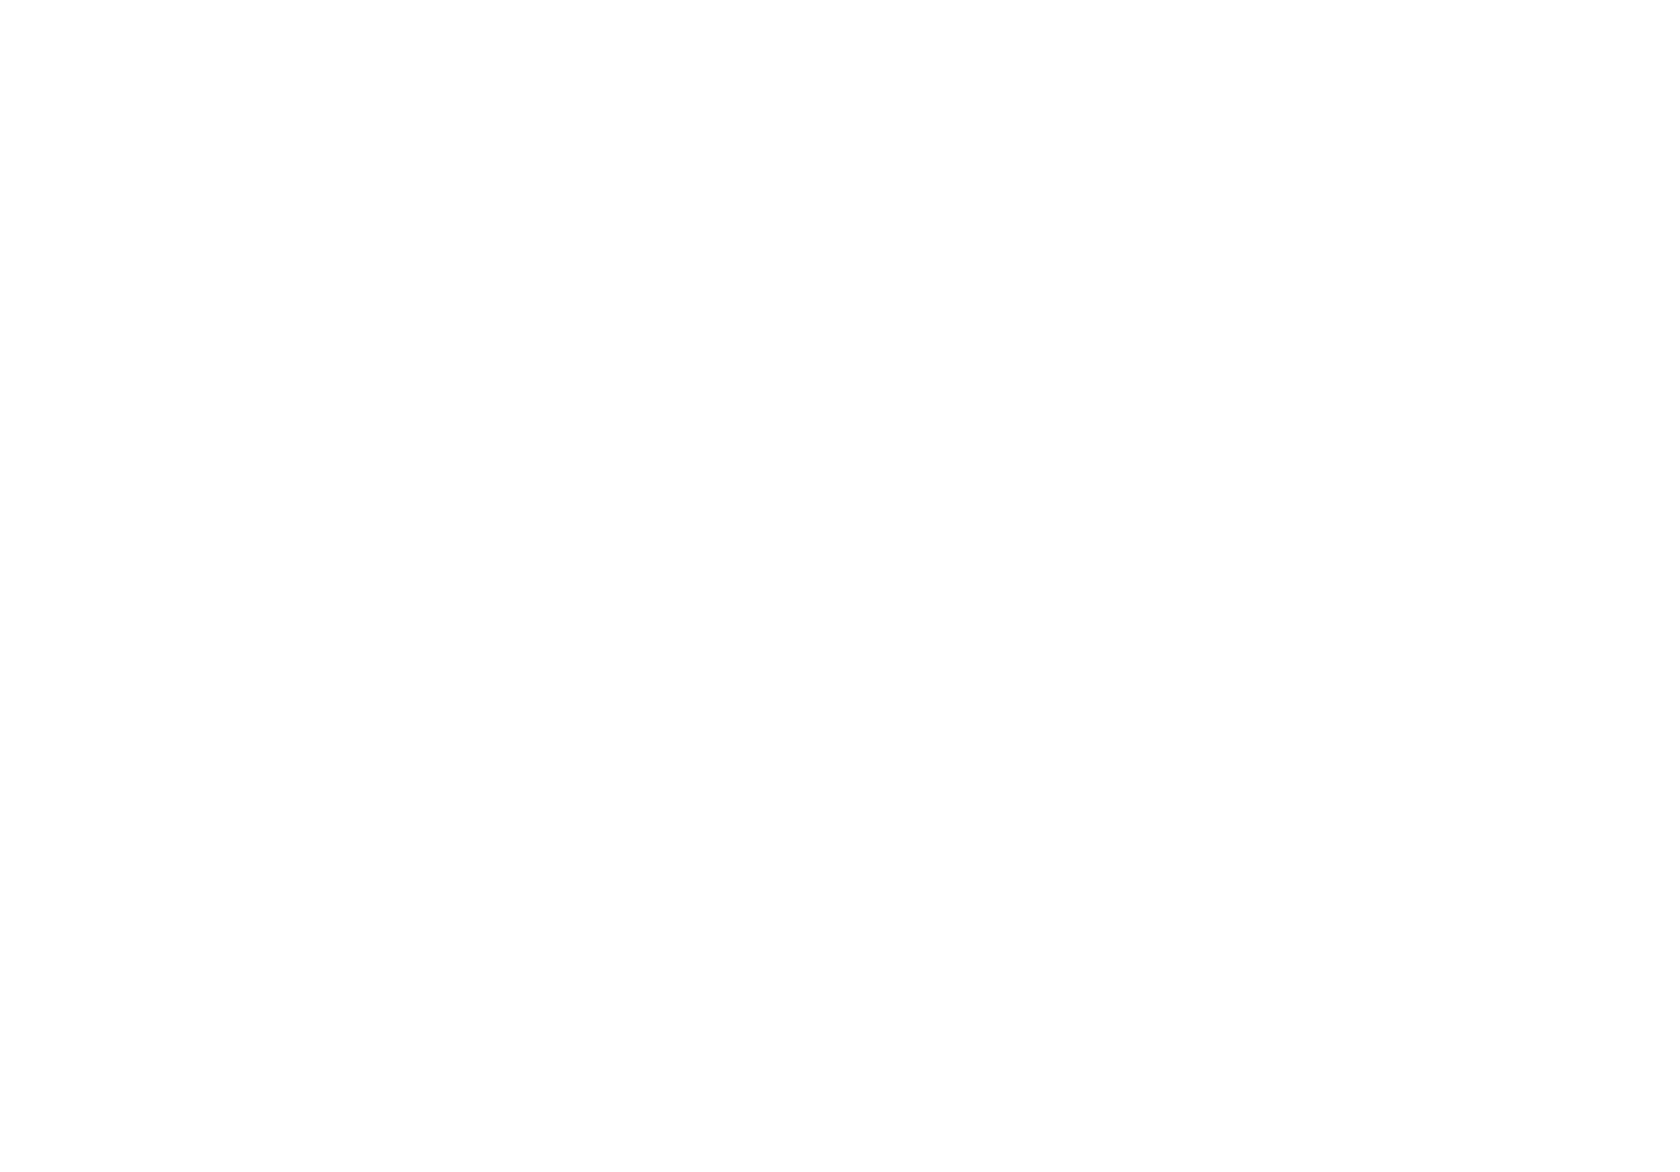 Упрощенный вариант логотипа - Брендбук сети медицинских клиник "Целитель"